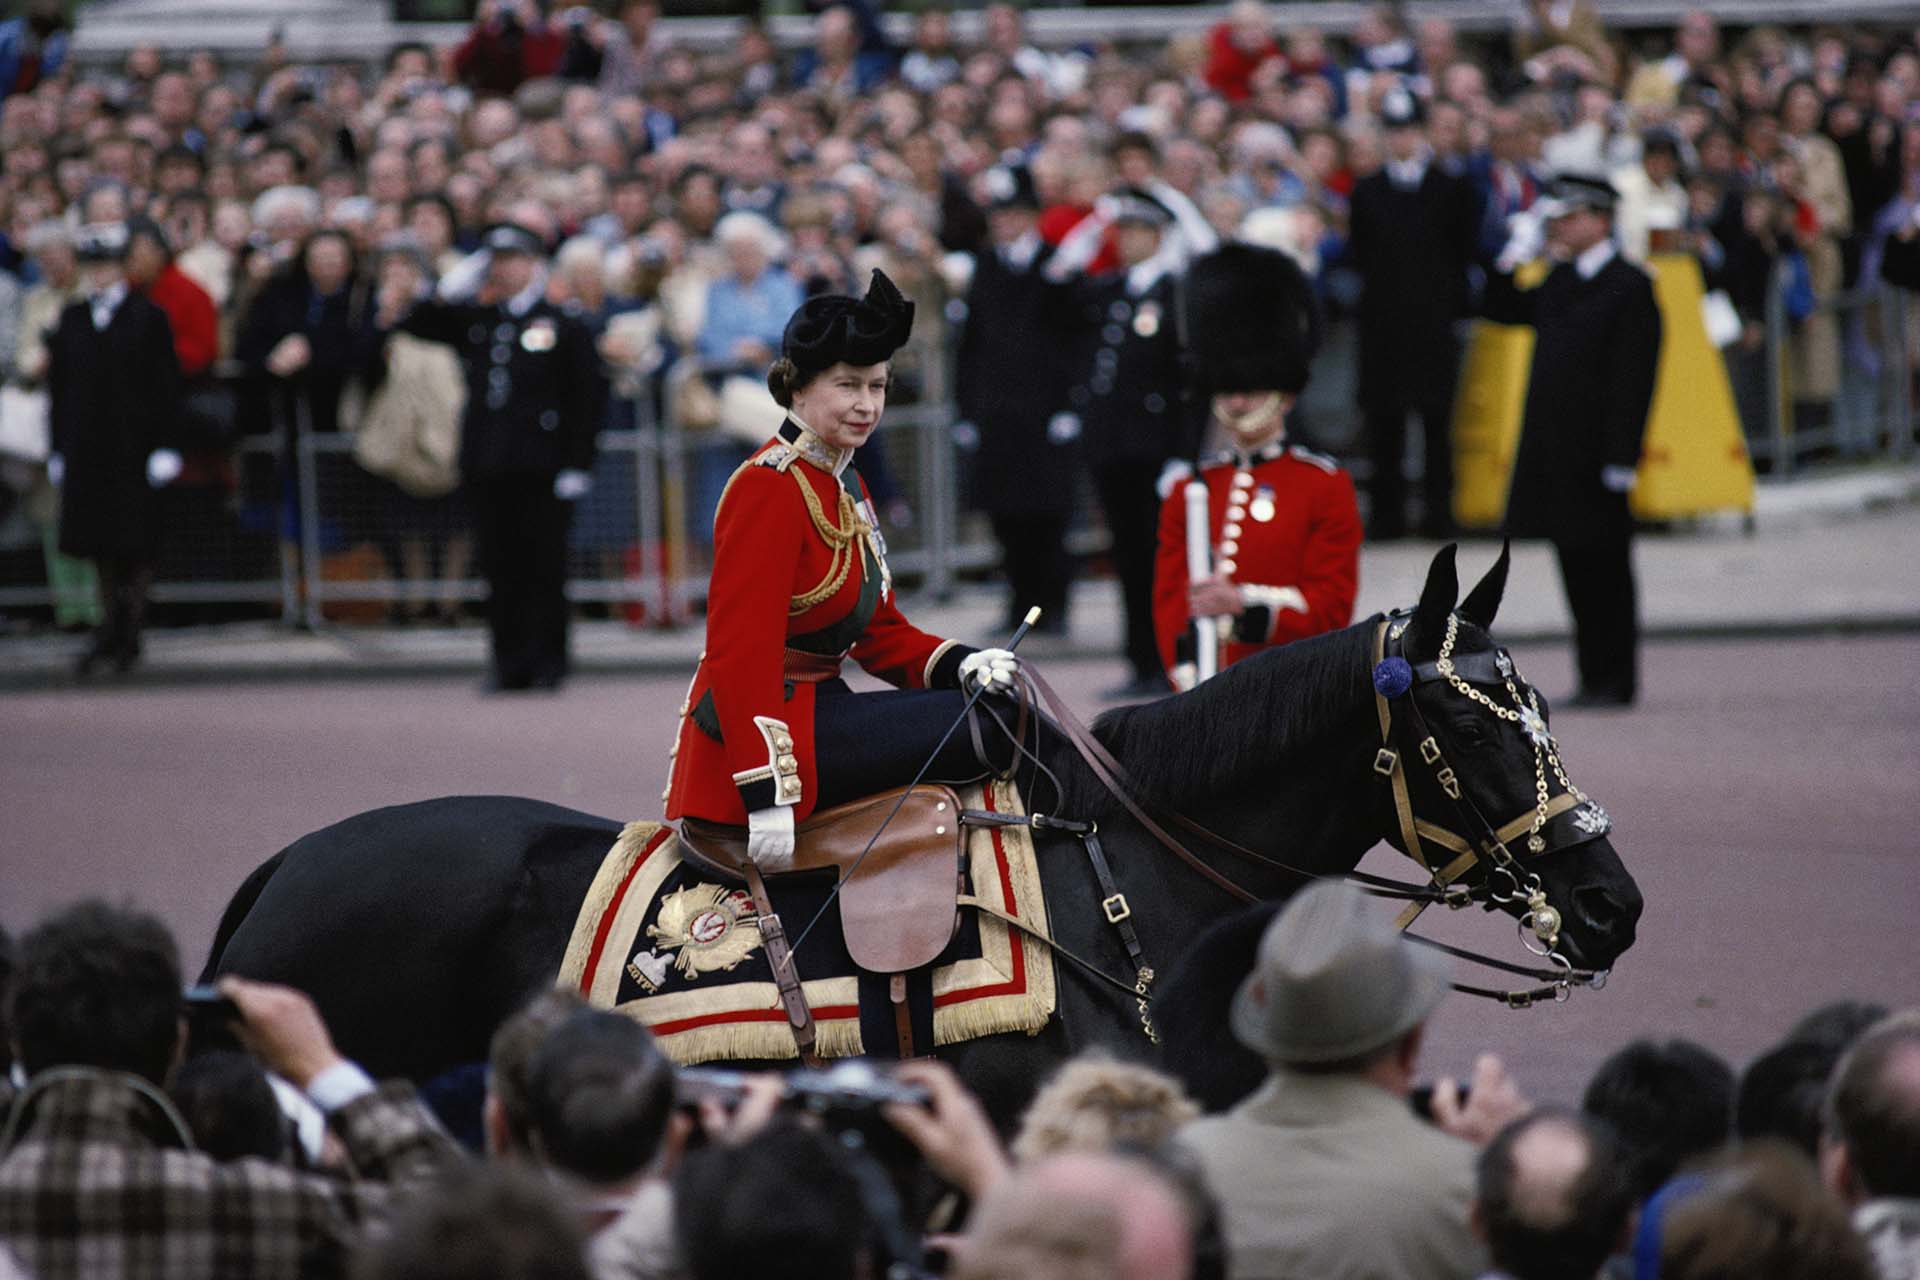 La Reina Isabel II montando a caballo, en traje de gala, durante la ceremonia Trooping the Colour en Horse Guards Parade, Londres, Inglaterra, Gran Bretaña, junio de 1979. La Reina monta a "Burmese", un regalo de la Real Policía Montada de Canadá. (Photo by Tim Graham Photo Library via Getty Images)